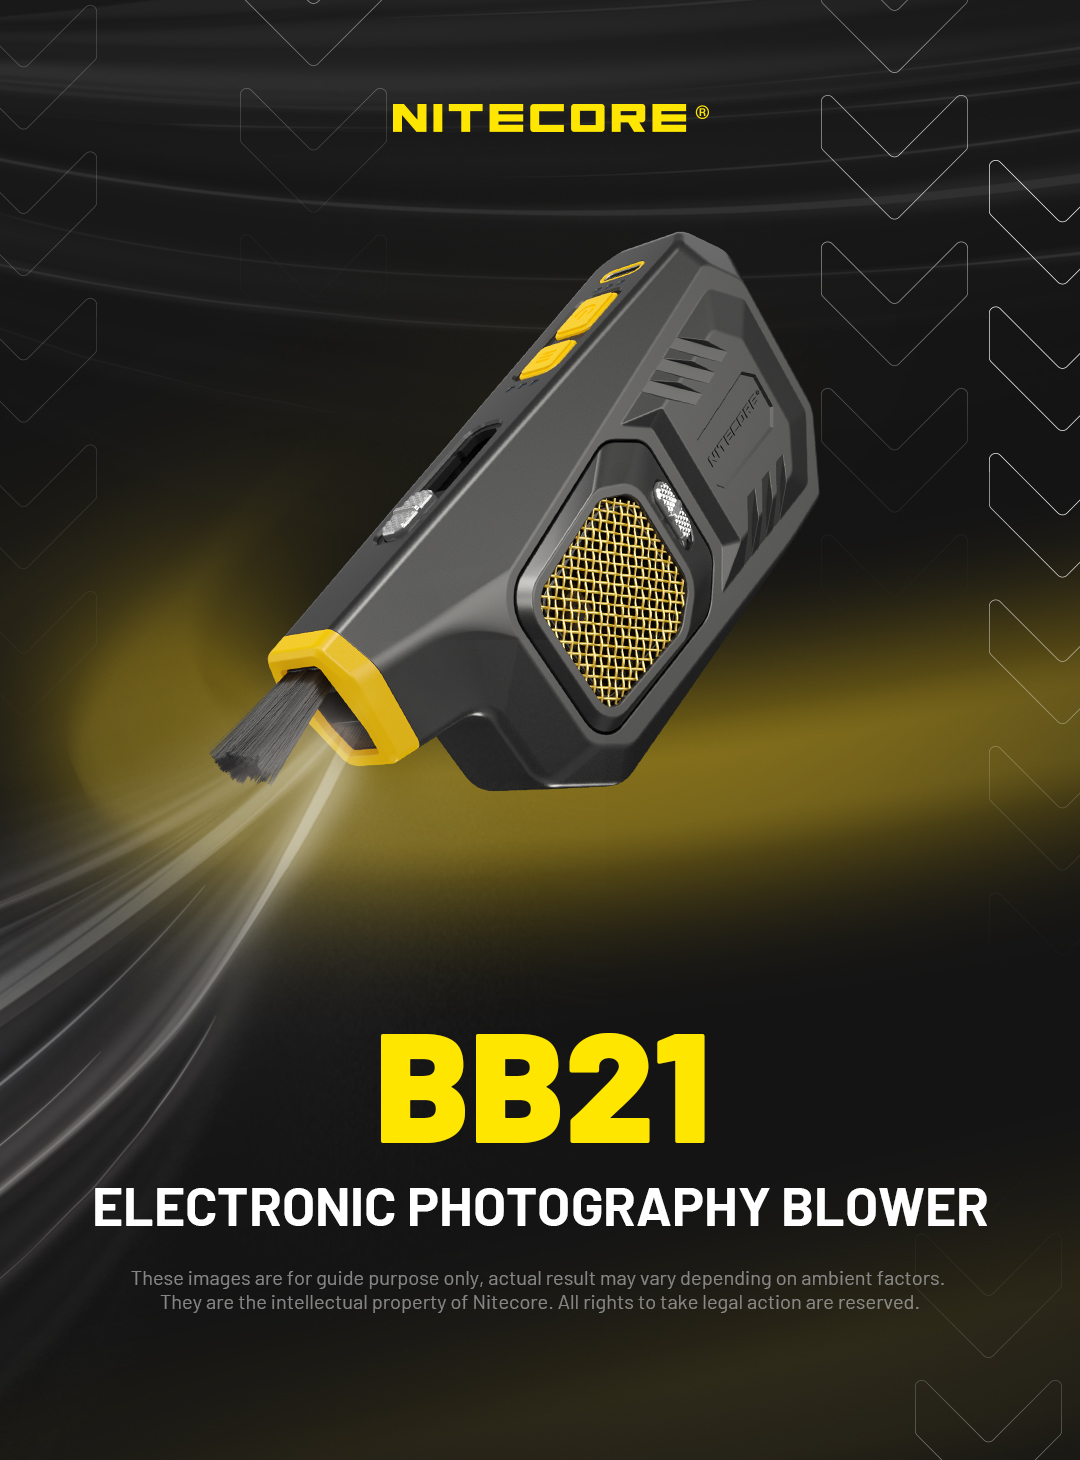 Nitecore Blowerbaby BB21 Souffleur d'air de nettoyage électronique ver